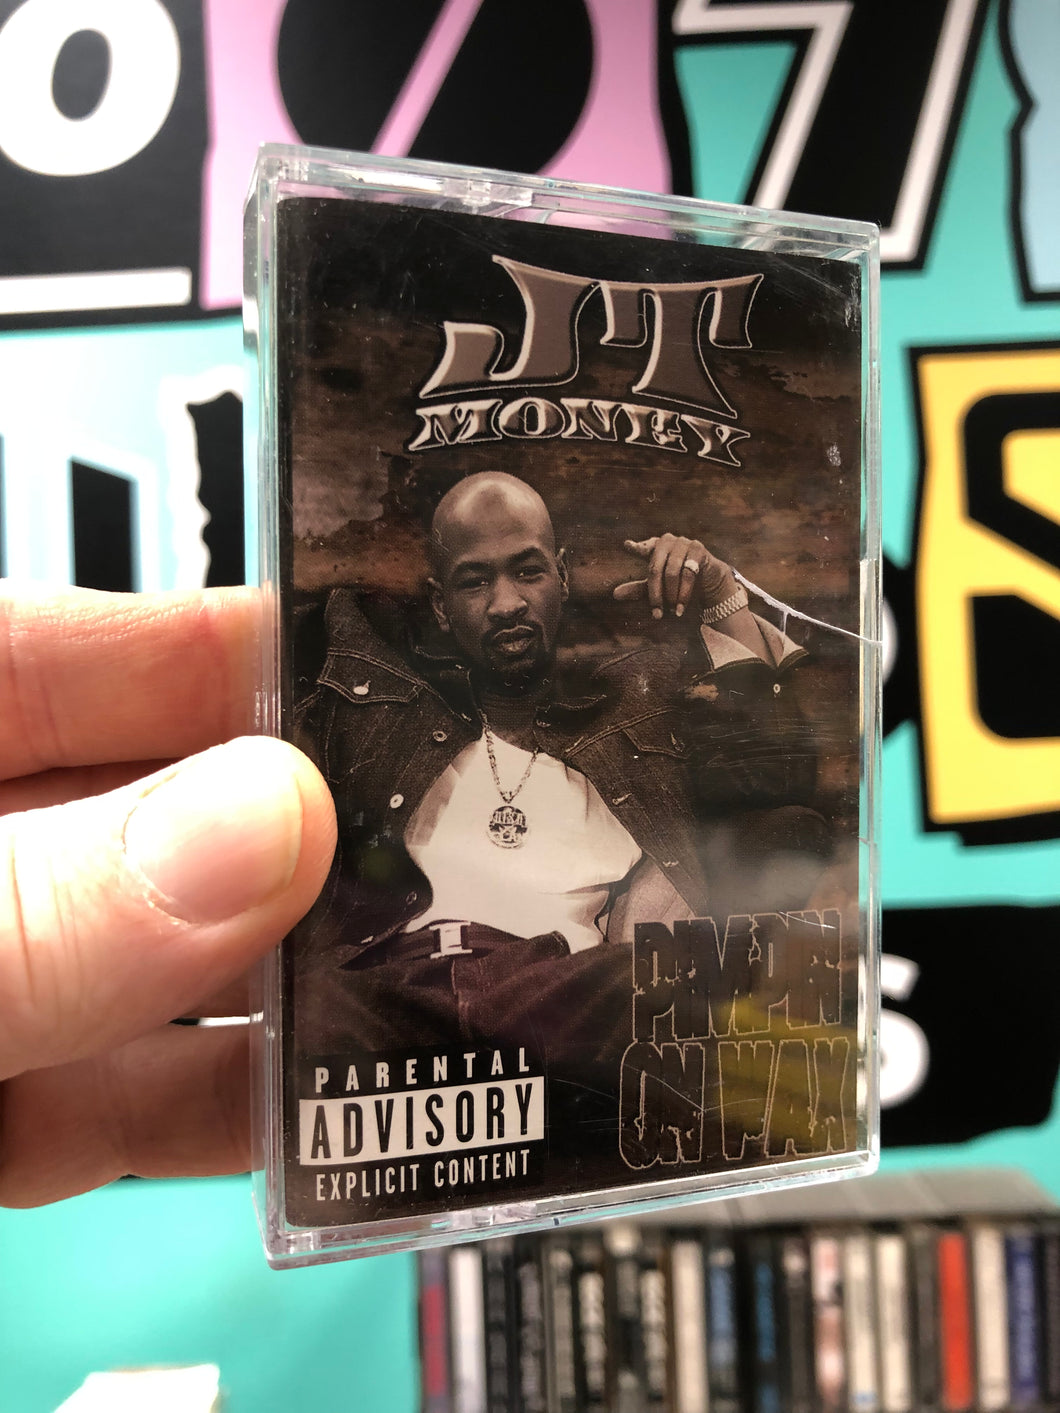 JT Money: Pimpin On Wax, OG, US 1999